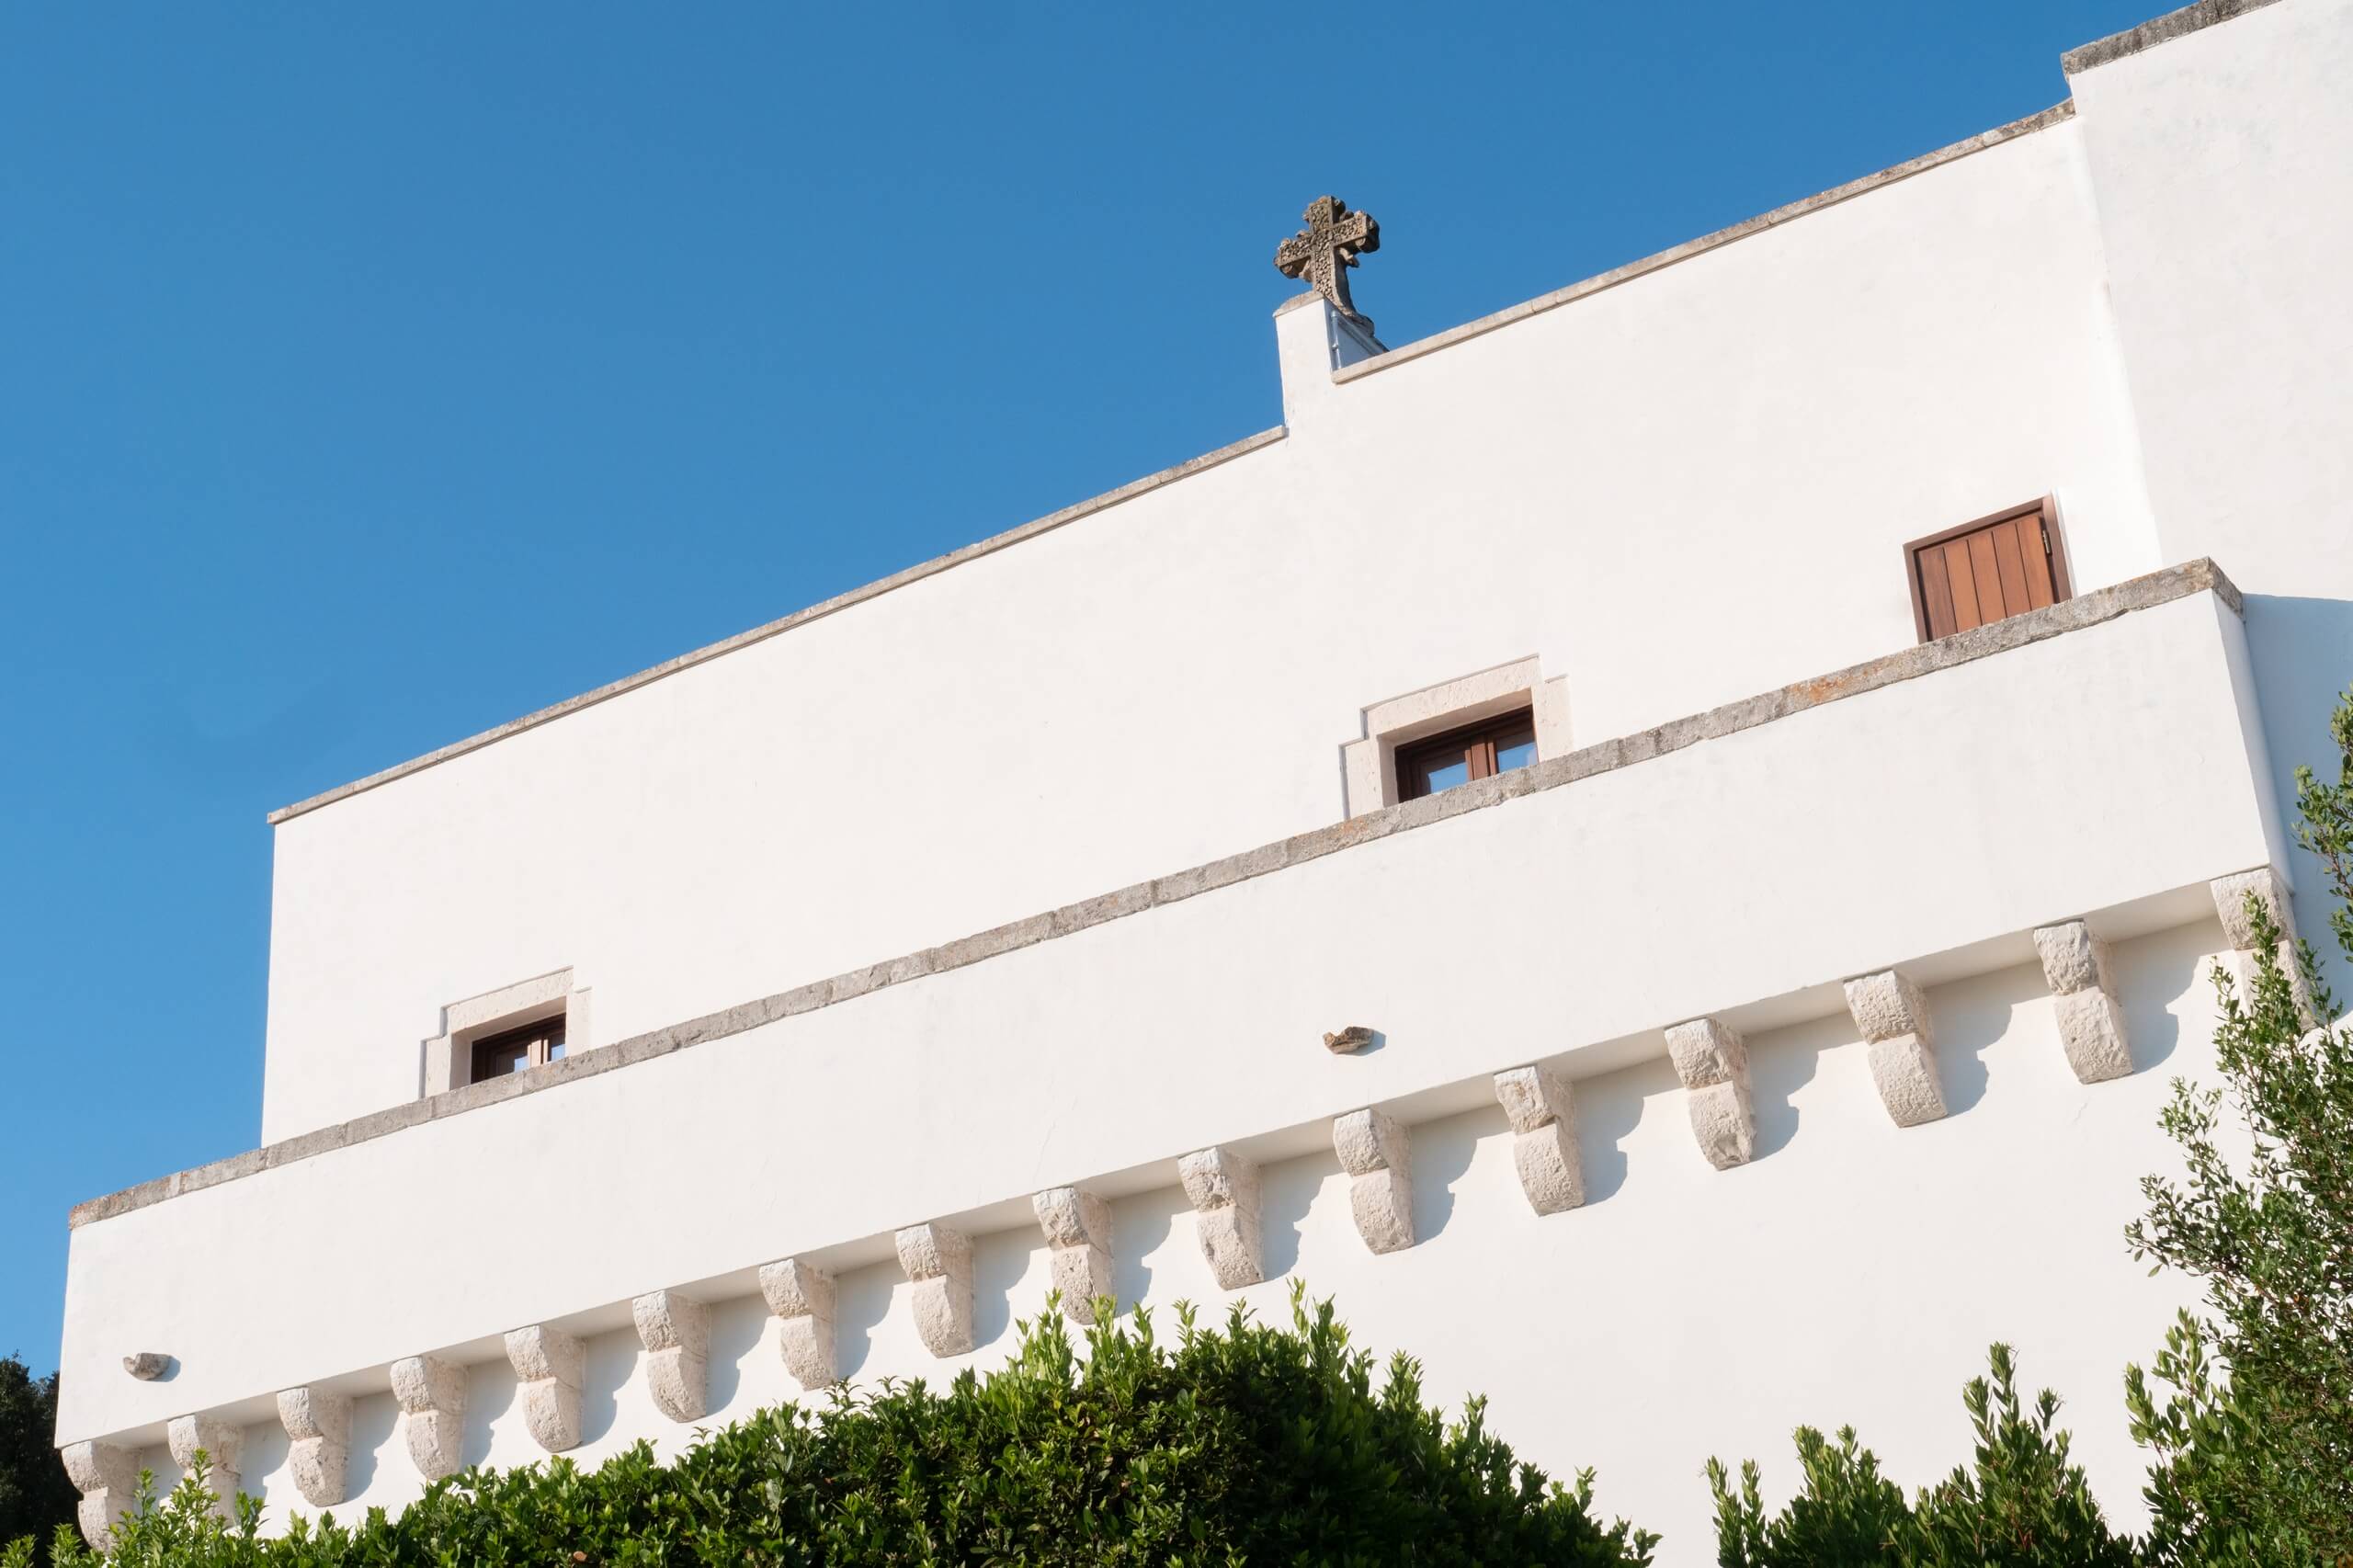 masseria-della-croce-putignano-puglia-apulia-luxury-home-croce-rooftop-balcony-ancient-antique